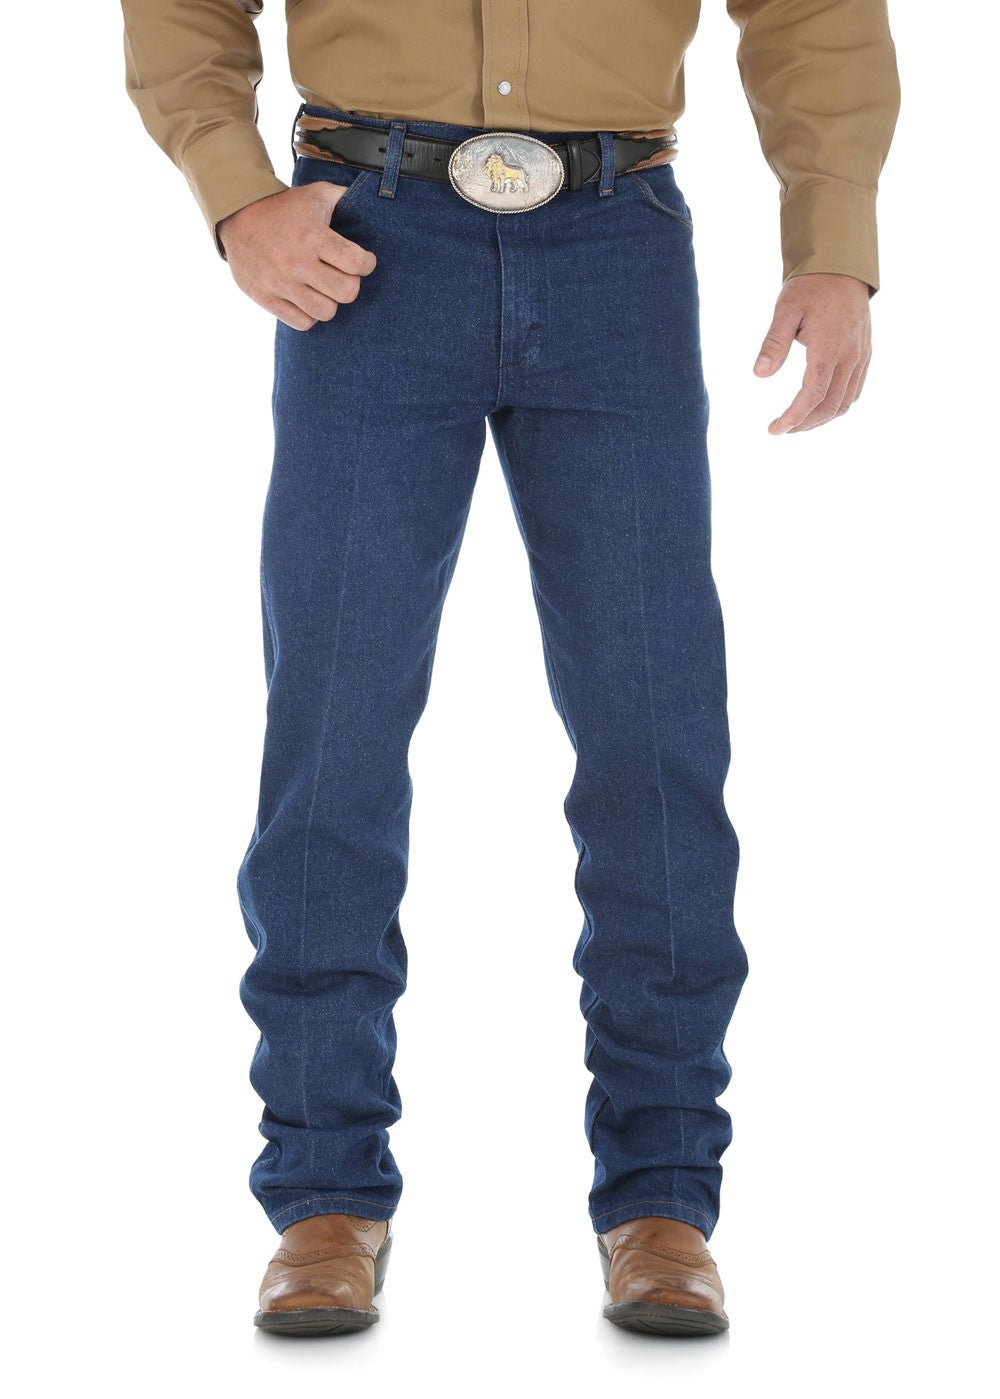 Wrangler | Mens | Jeans | Cowboy Cut | 32' | Original | Prewashed Indigo - BK8 Outfitters Australia